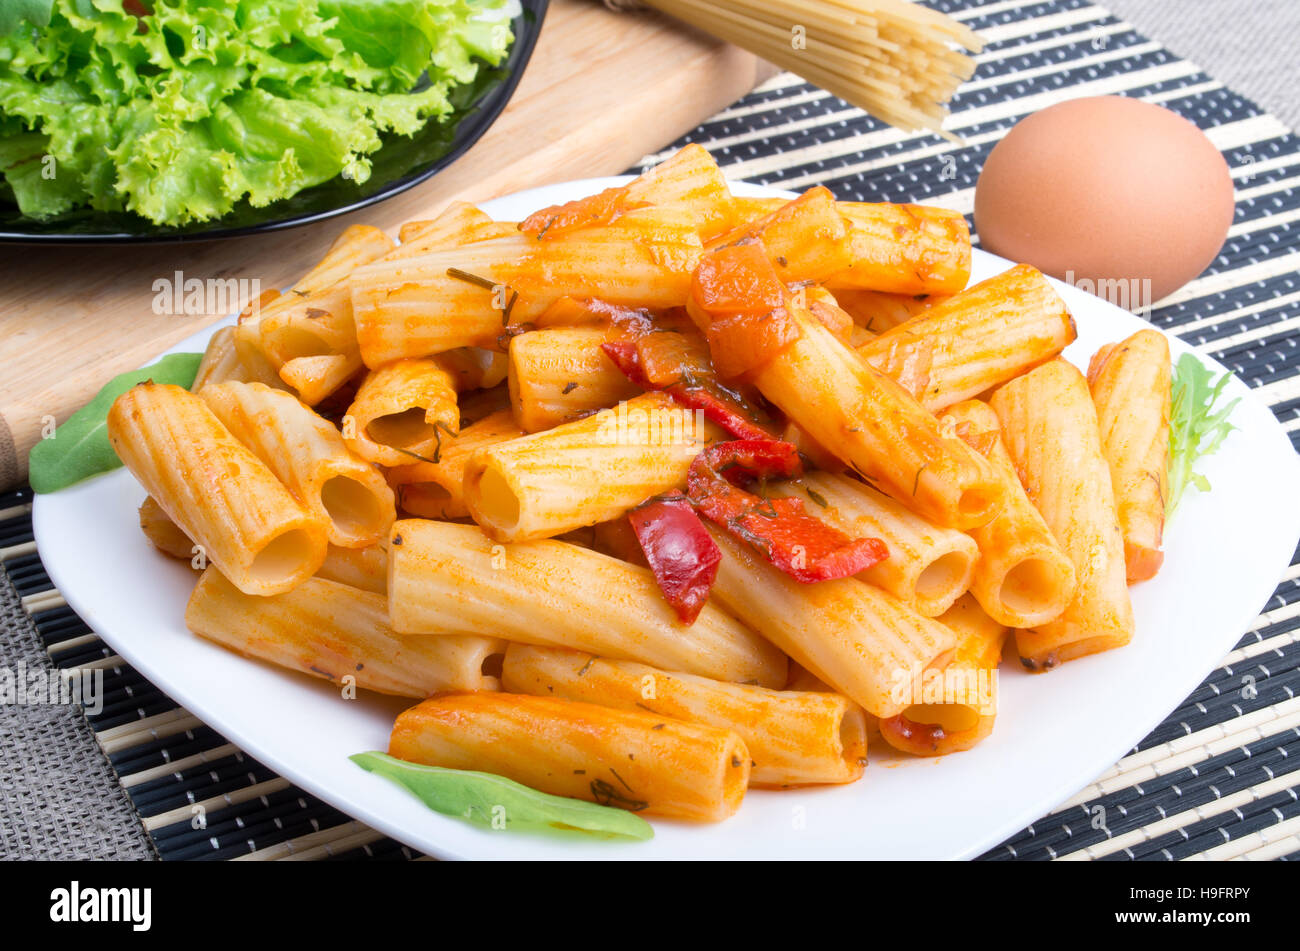 Plato de rigatoni pasta con salsa de verduras junto al plato con lechuga y los ingredientes para cocinar Foto de stock